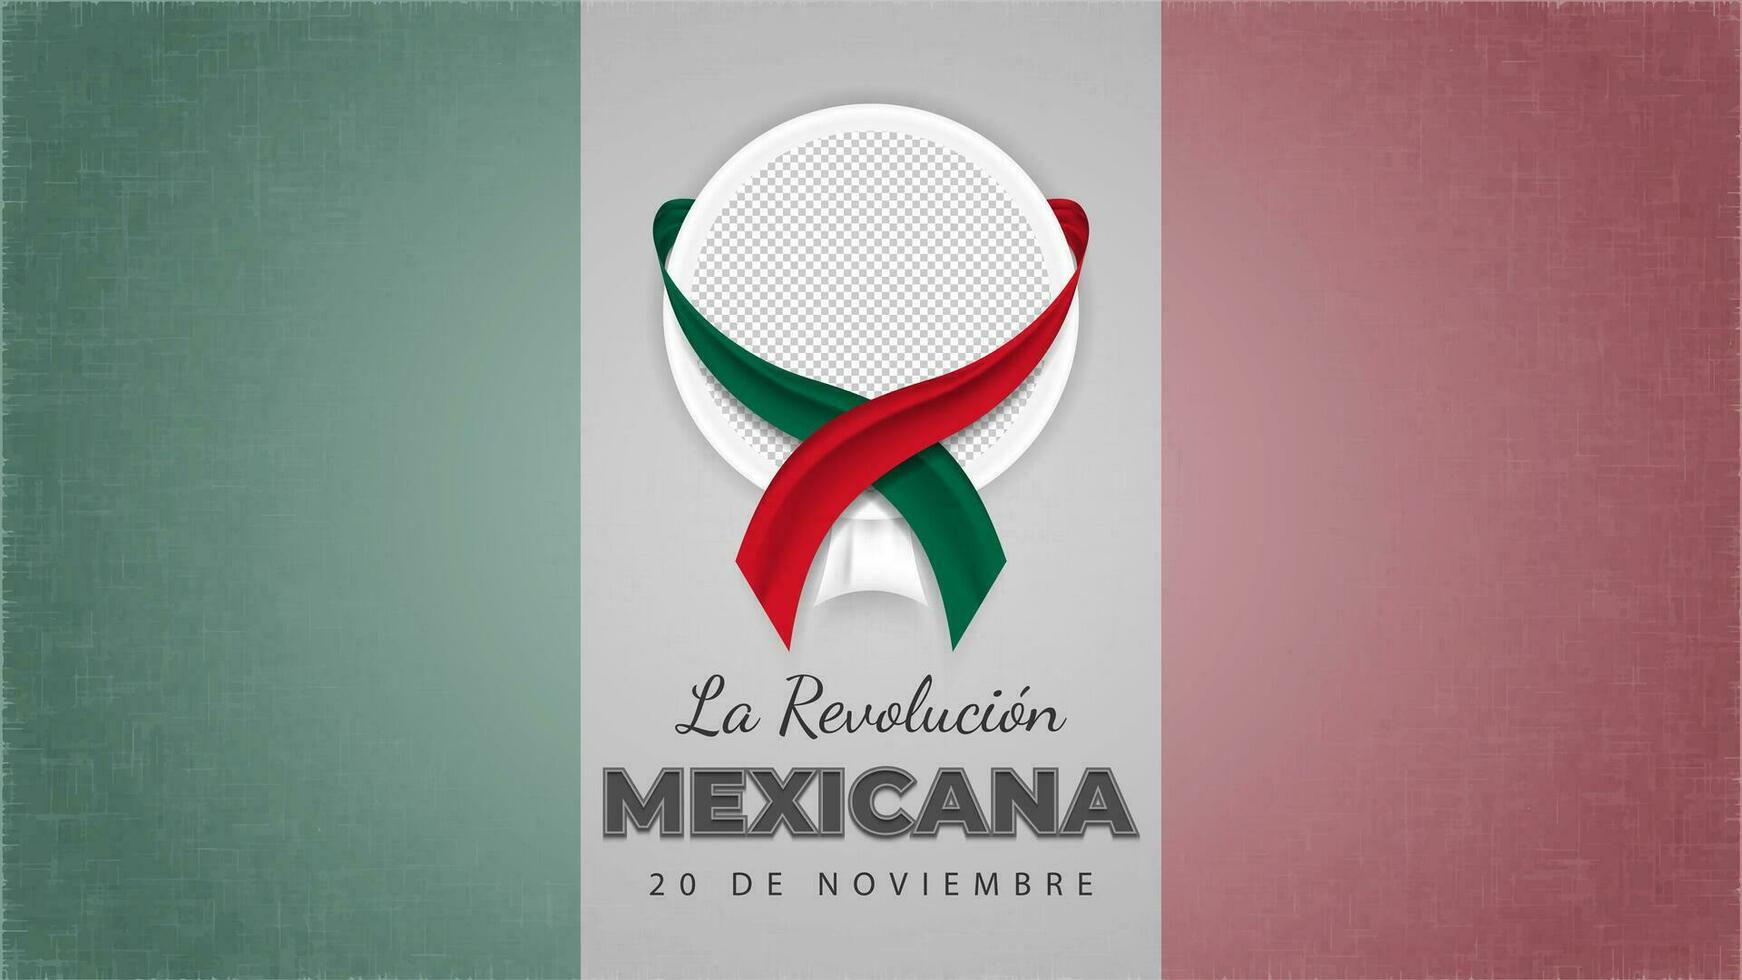 la Revolution mexicana Gruß auf Grunge Flagge Hintergrund mit Raum zum Bild und dreifarbig Bänder vektor